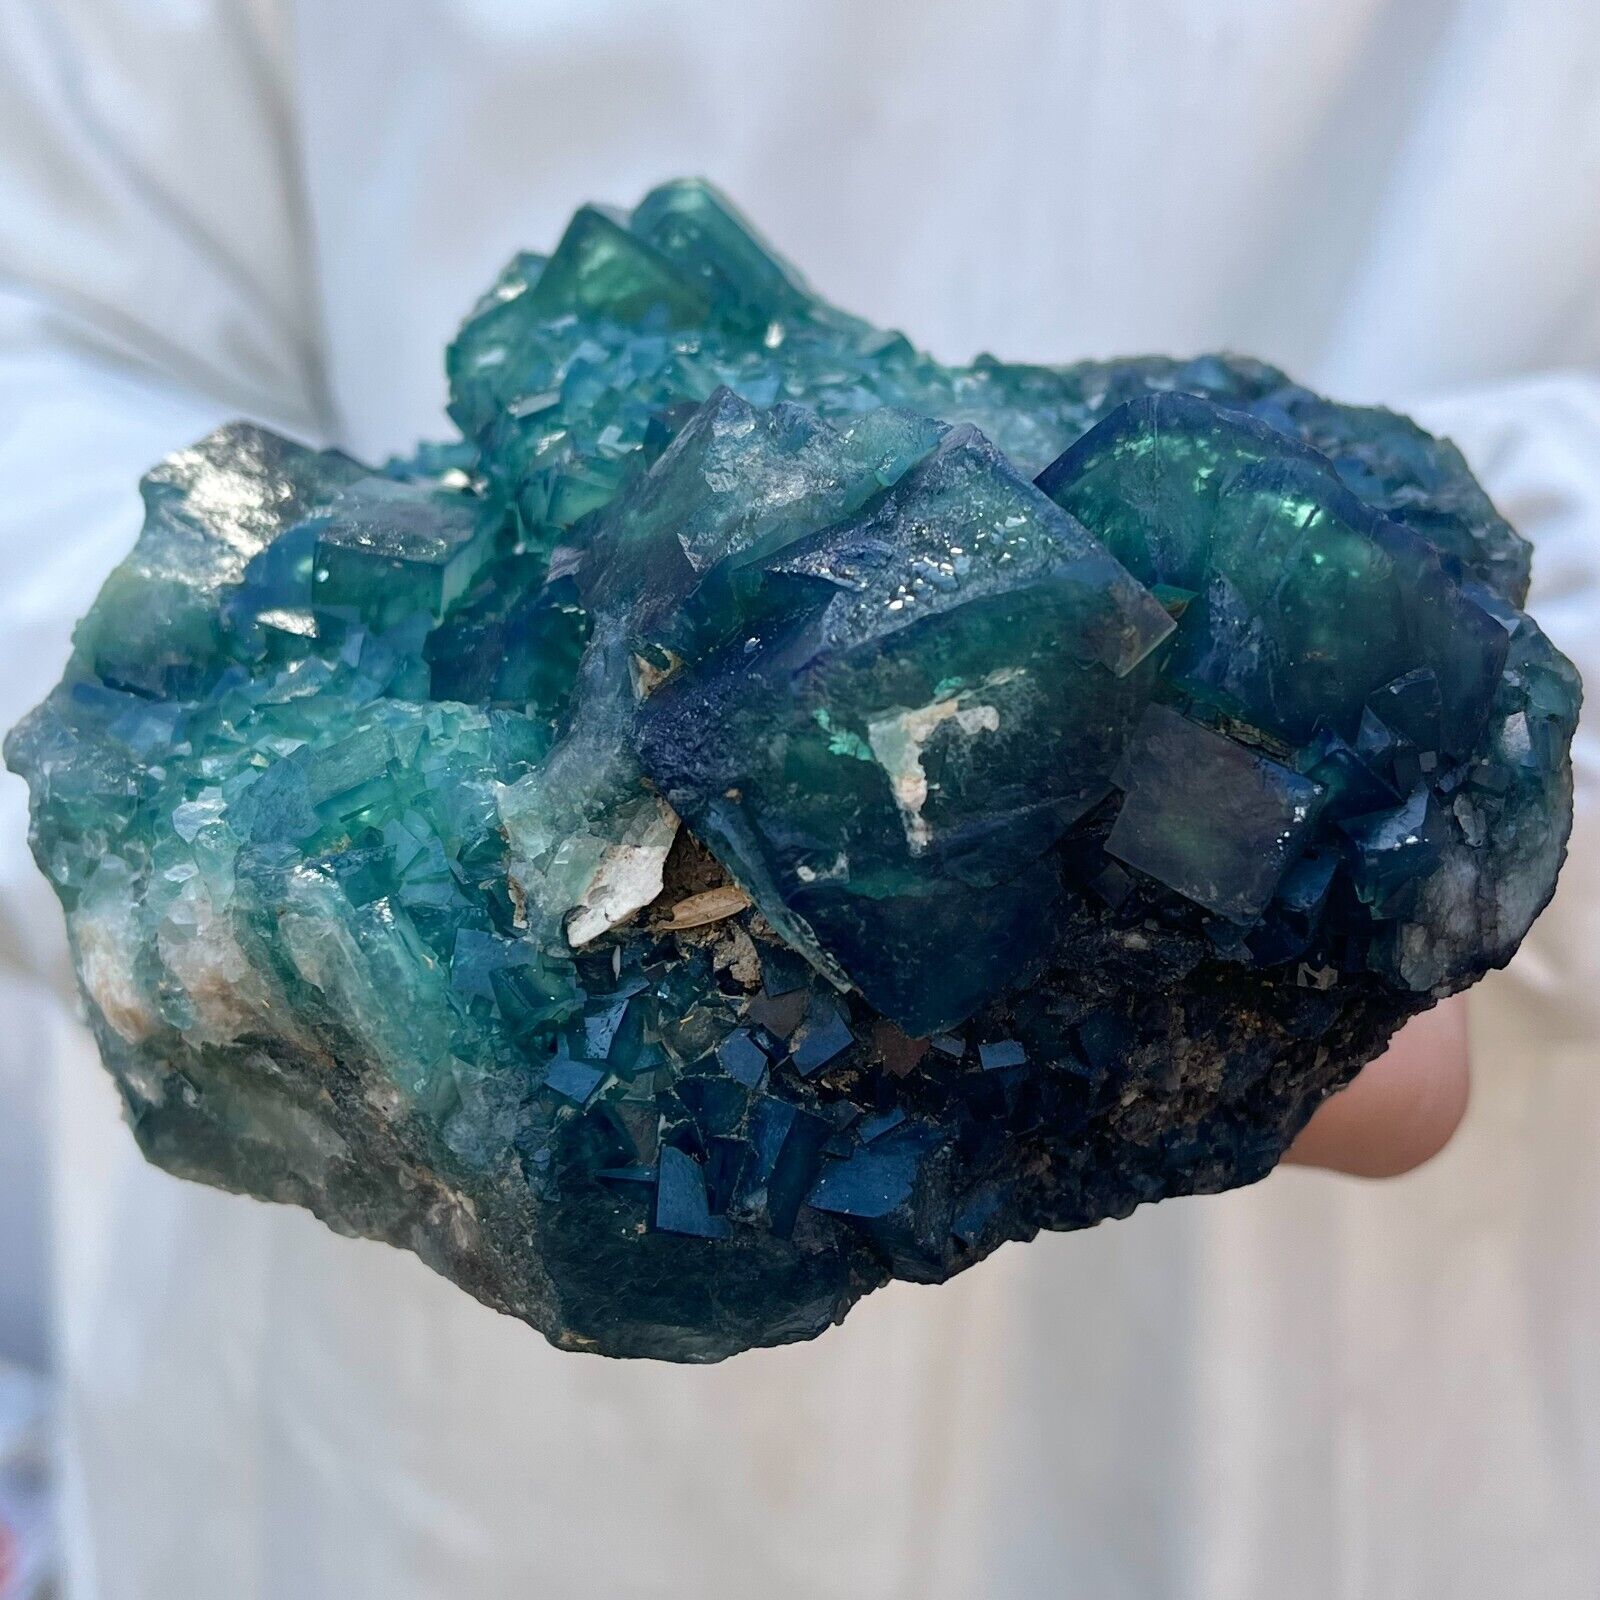 3.4lb Large NATURAL Green Cube FLUORITE Quartz Crystal Cluster Mineral Specimen